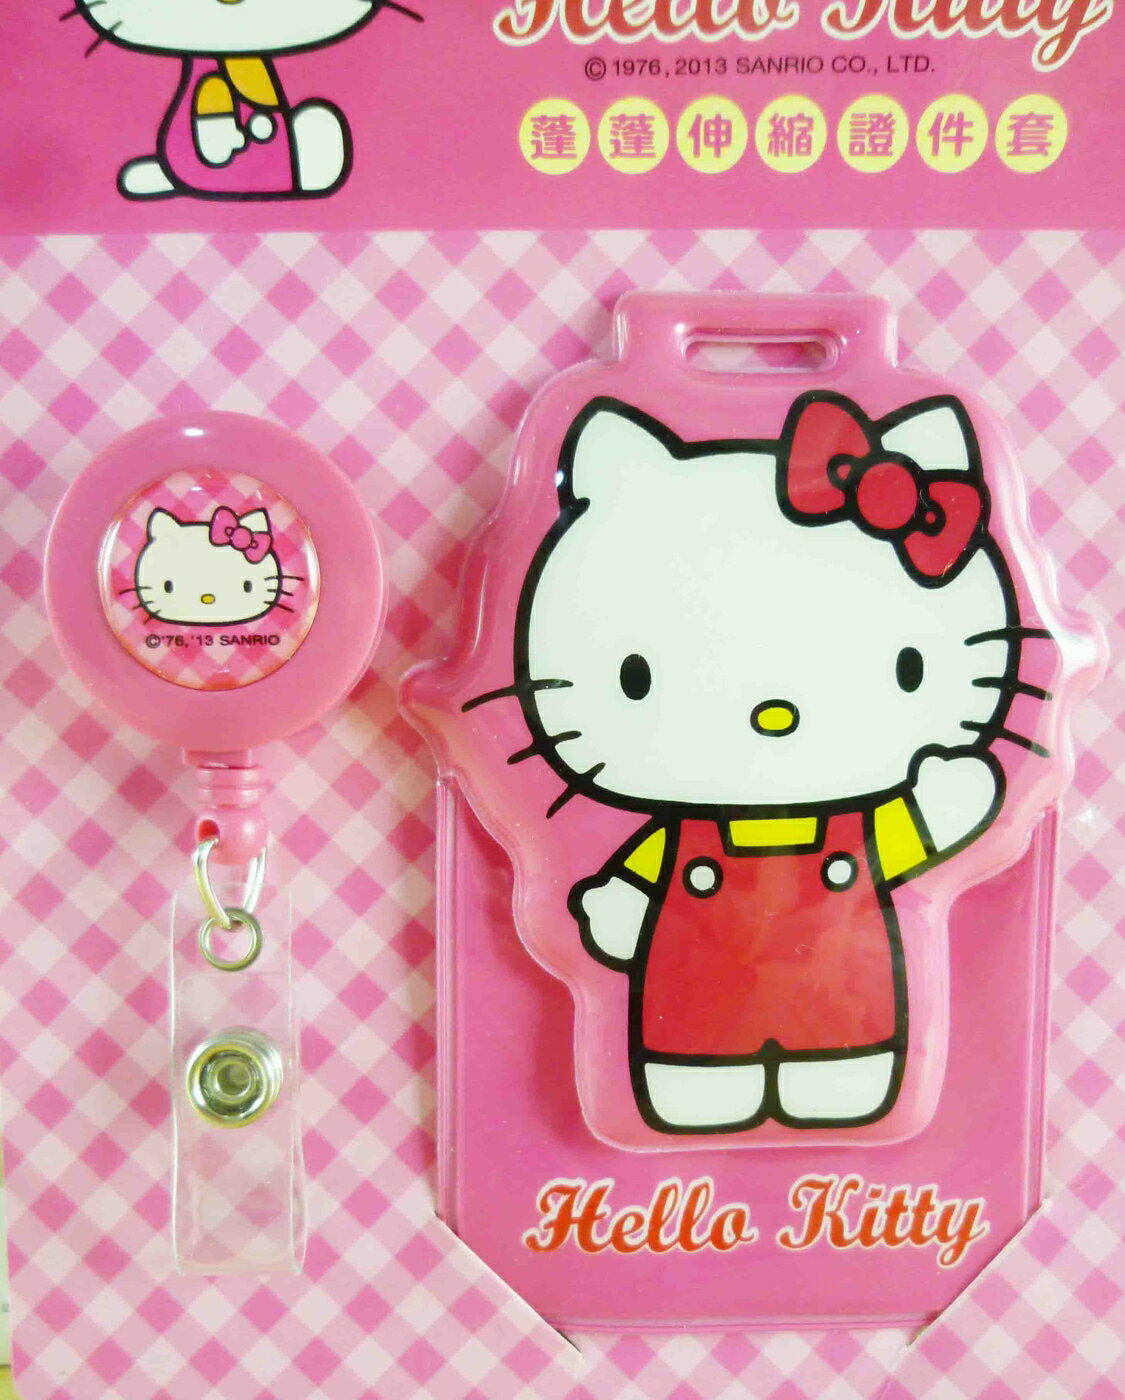 【震撼精品百貨】Hello Kitty 凱蒂貓 KITTY證件套組-粉招手 震撼日式精品百貨